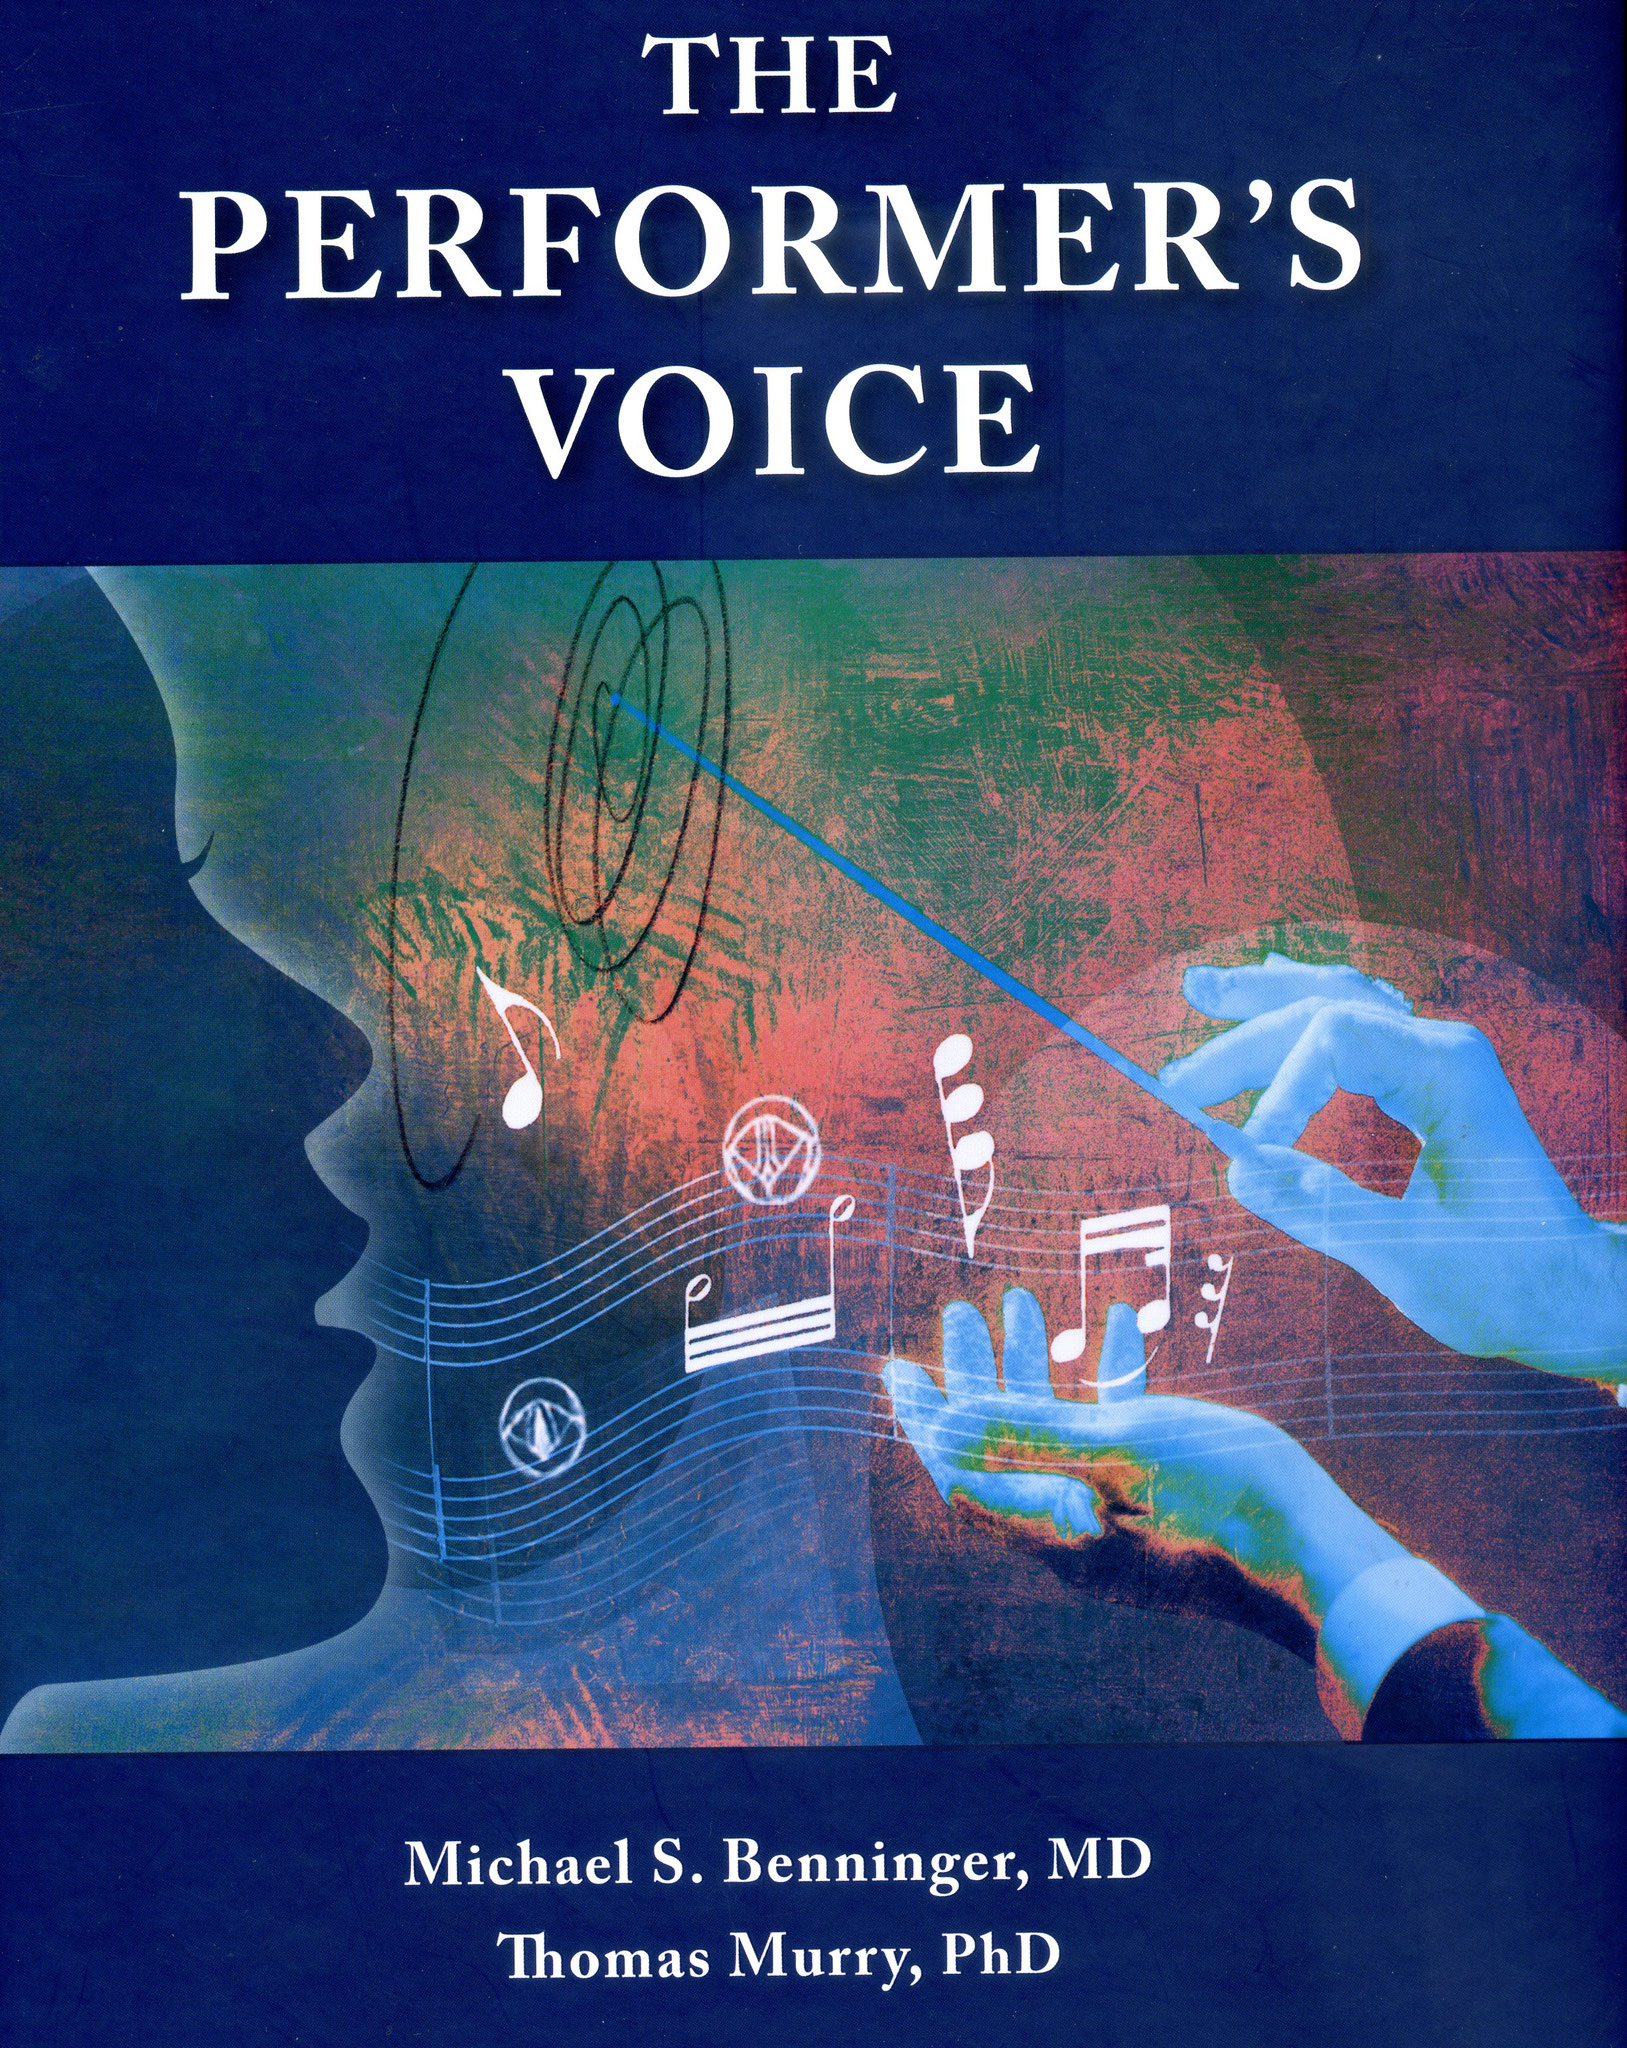 The Performers Voice , Fachbuch über die Kunst-u SängerInnenstimme ,mit Coautoren Dres Schlömicher u Weikert:  Kap. 12  "backstage vocal medicine"